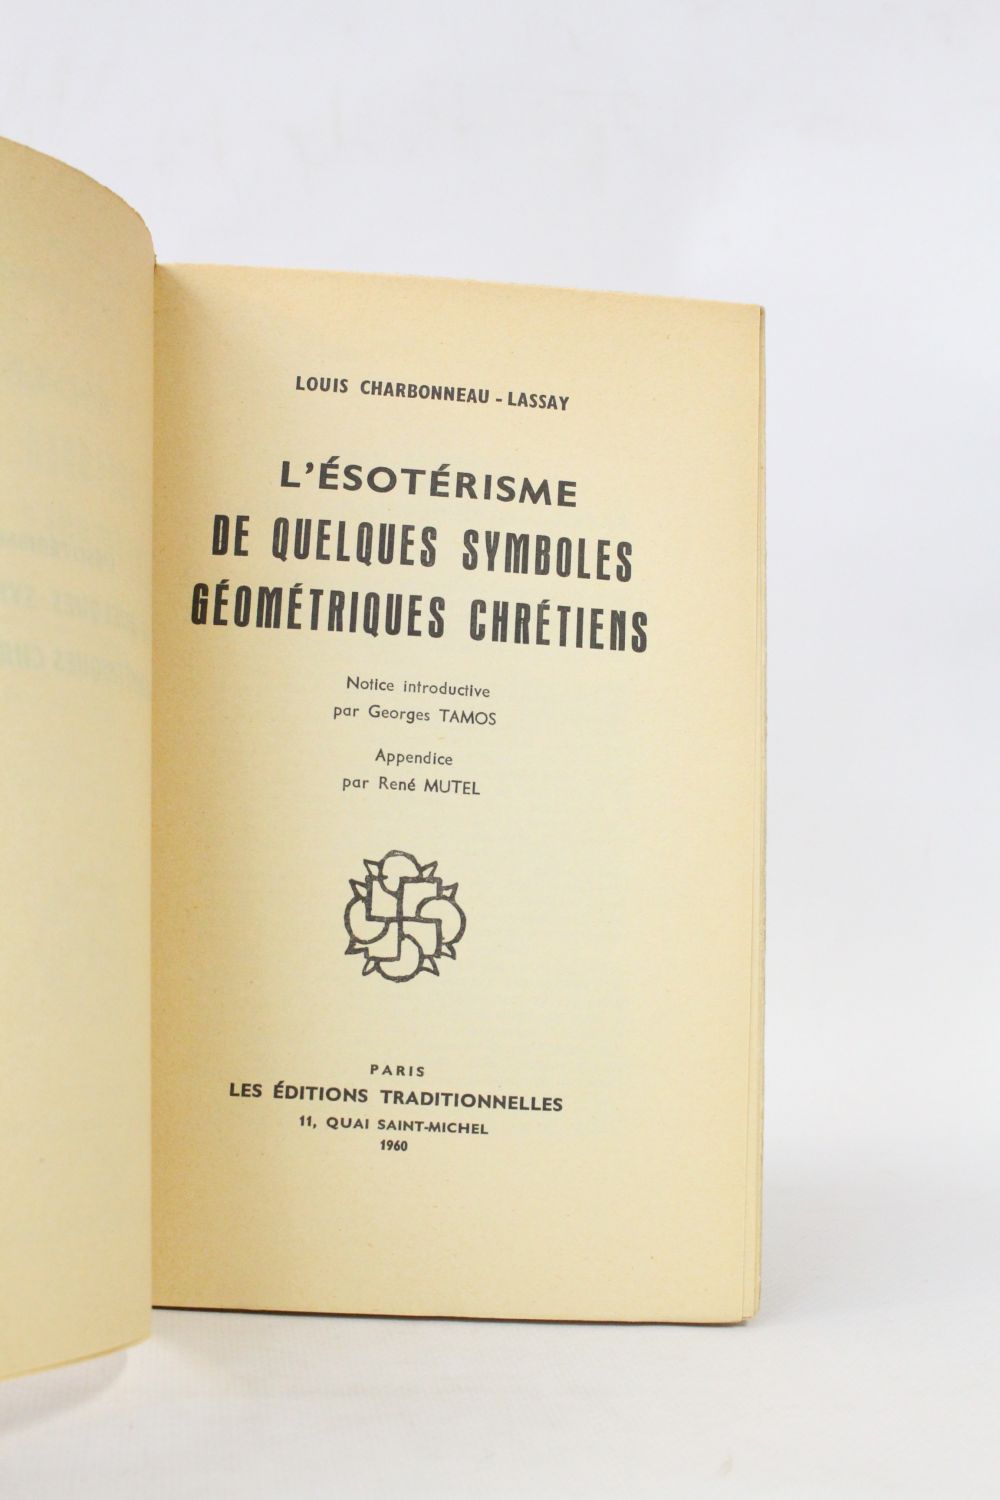 Les archives de Louis Charbonneau-Lassay - Ulule